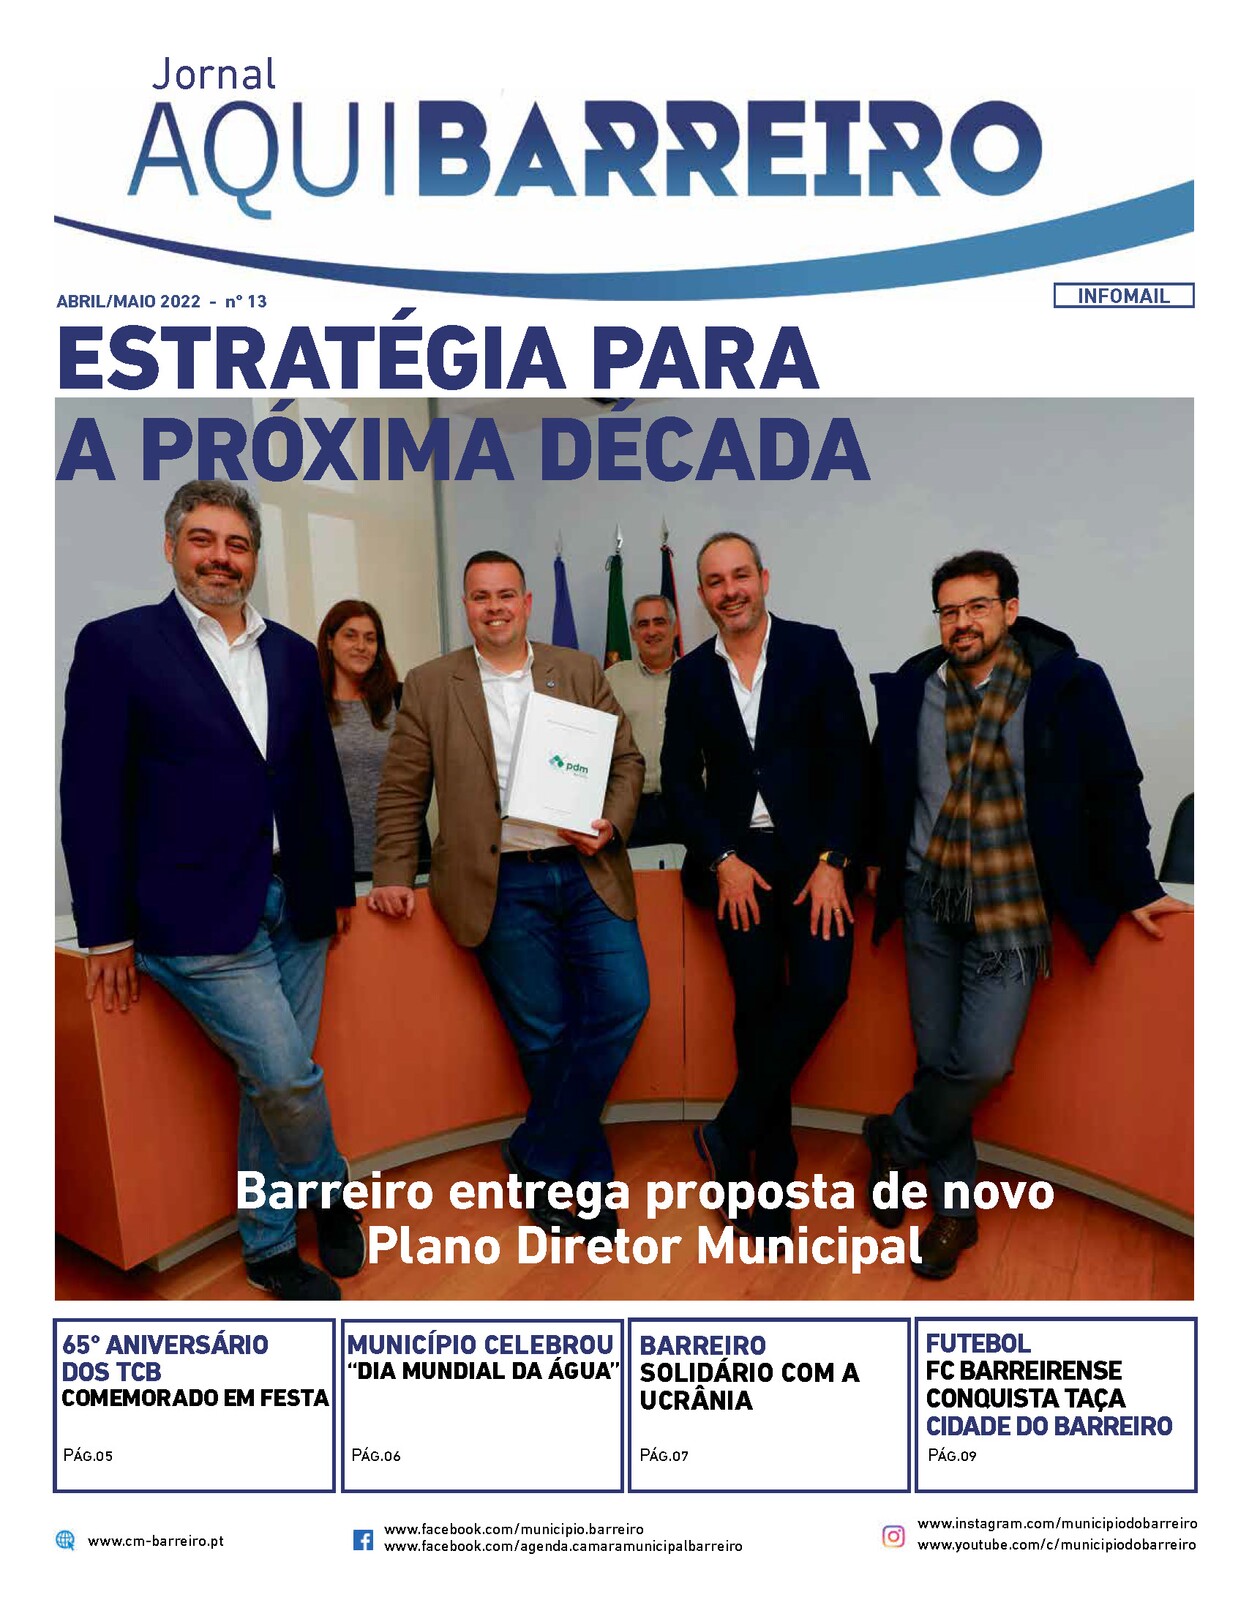 Jornal Municipal “Aqui Barreiro” abril/maio já disponível